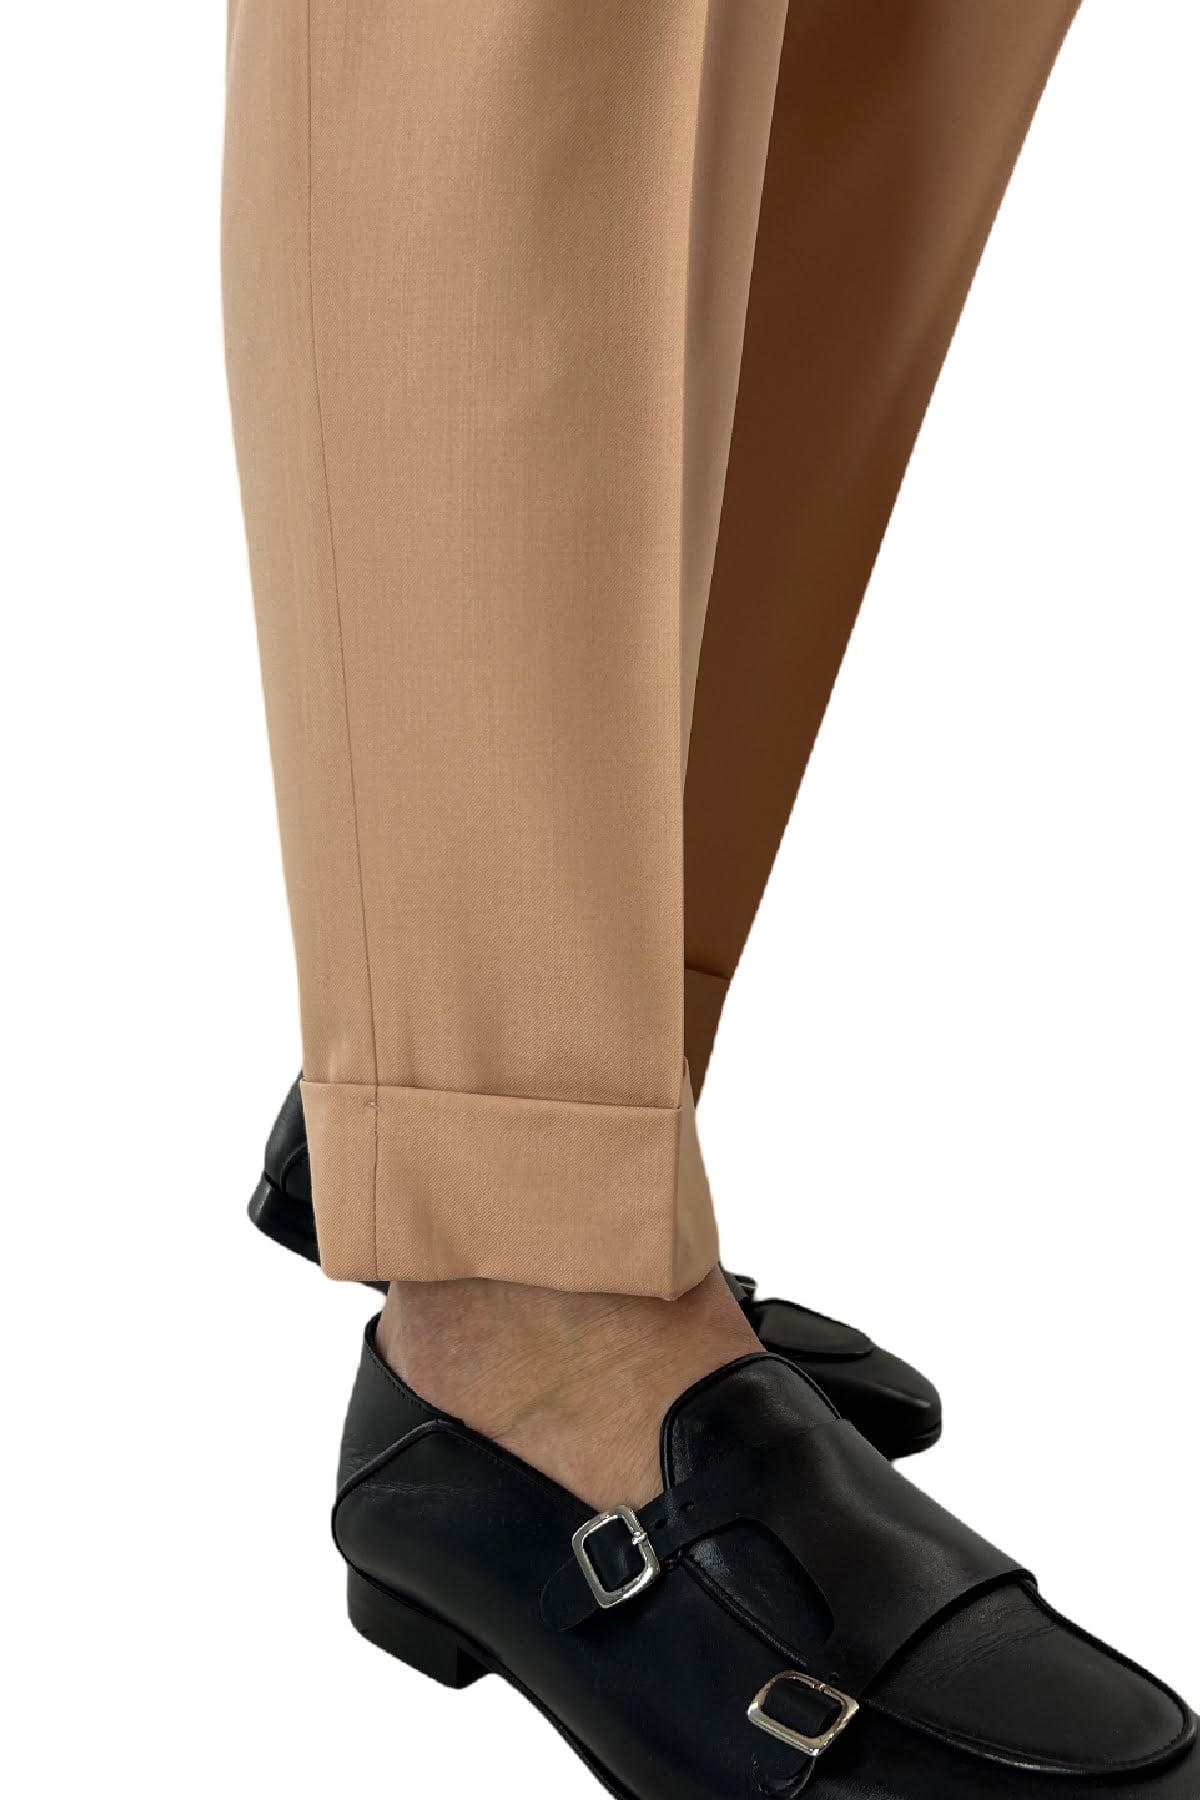 Pantalone uomo Pesca in fresco lana 140's Holland & Sherry vita alta con pinces fibbie laterali e risvolto 4cm